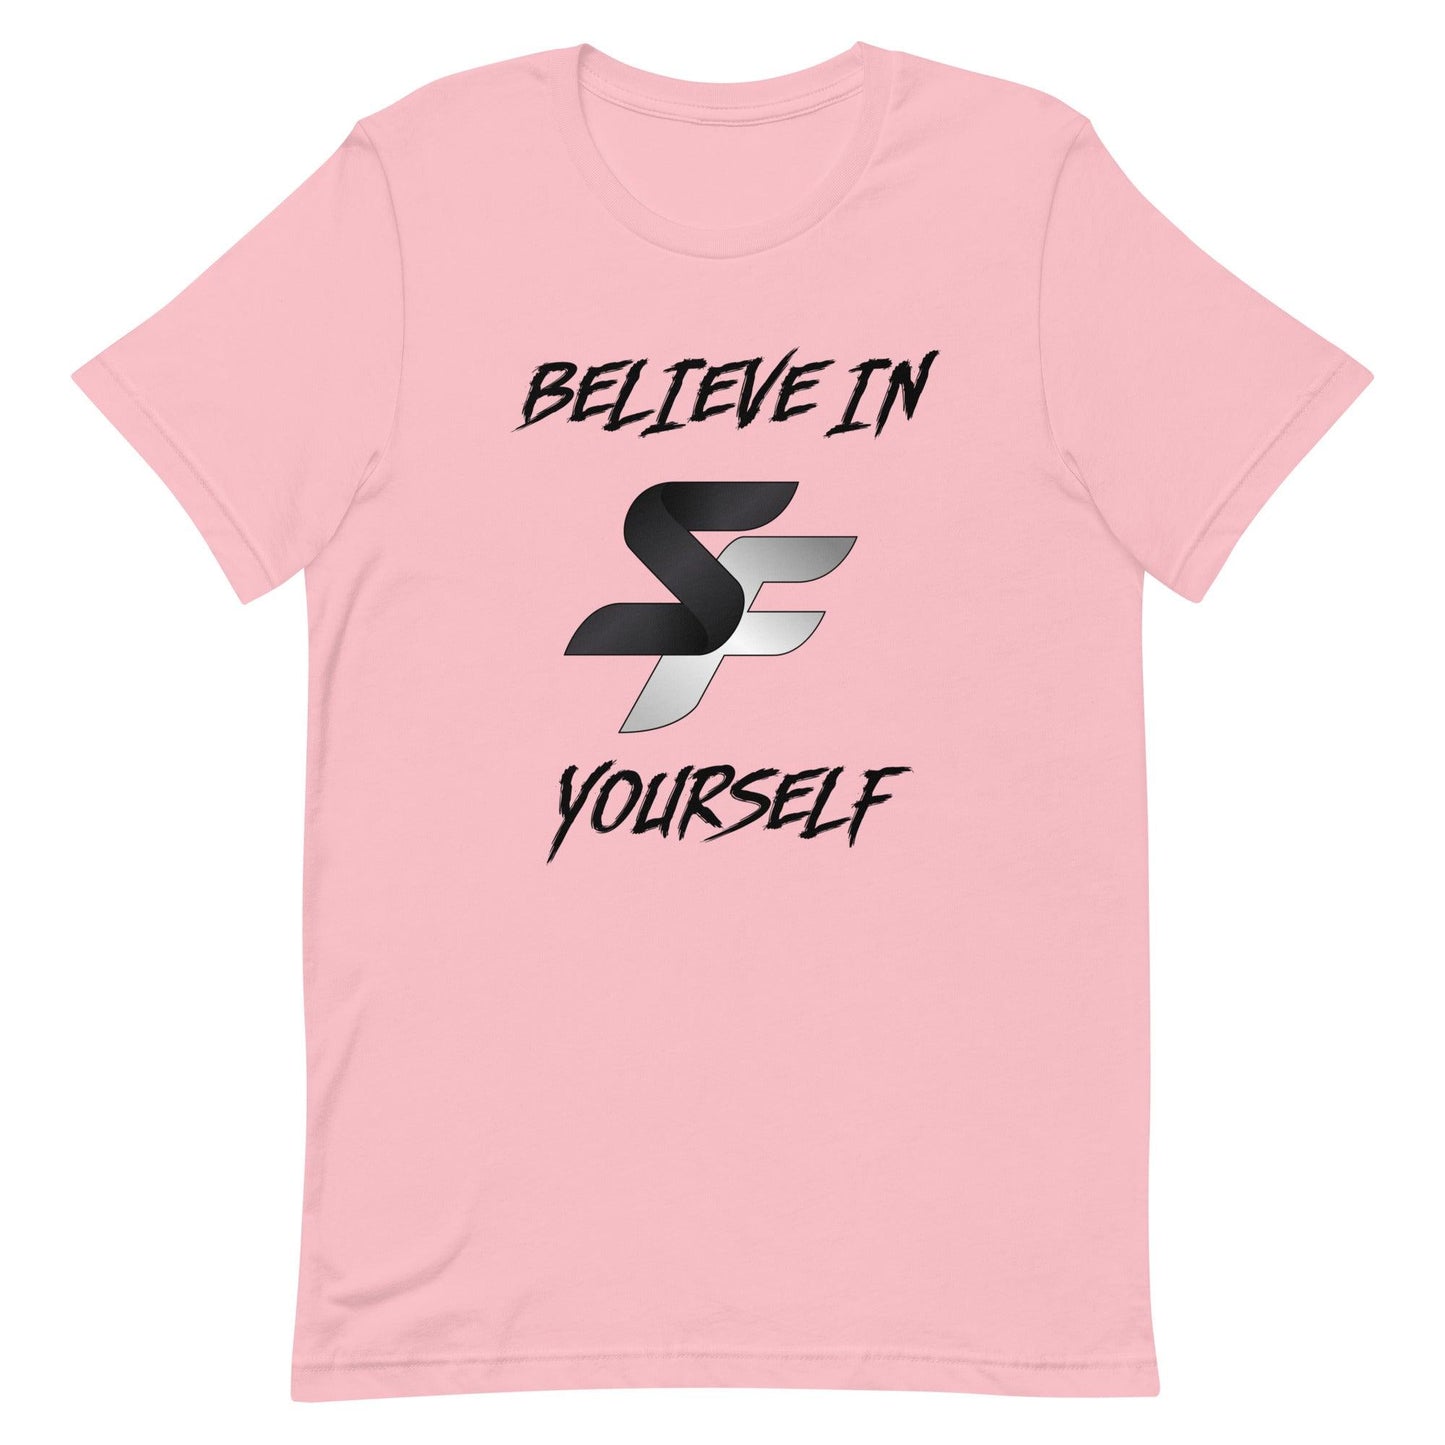 Isaiah Canaan "Believe" t-shirt - Fan Arch